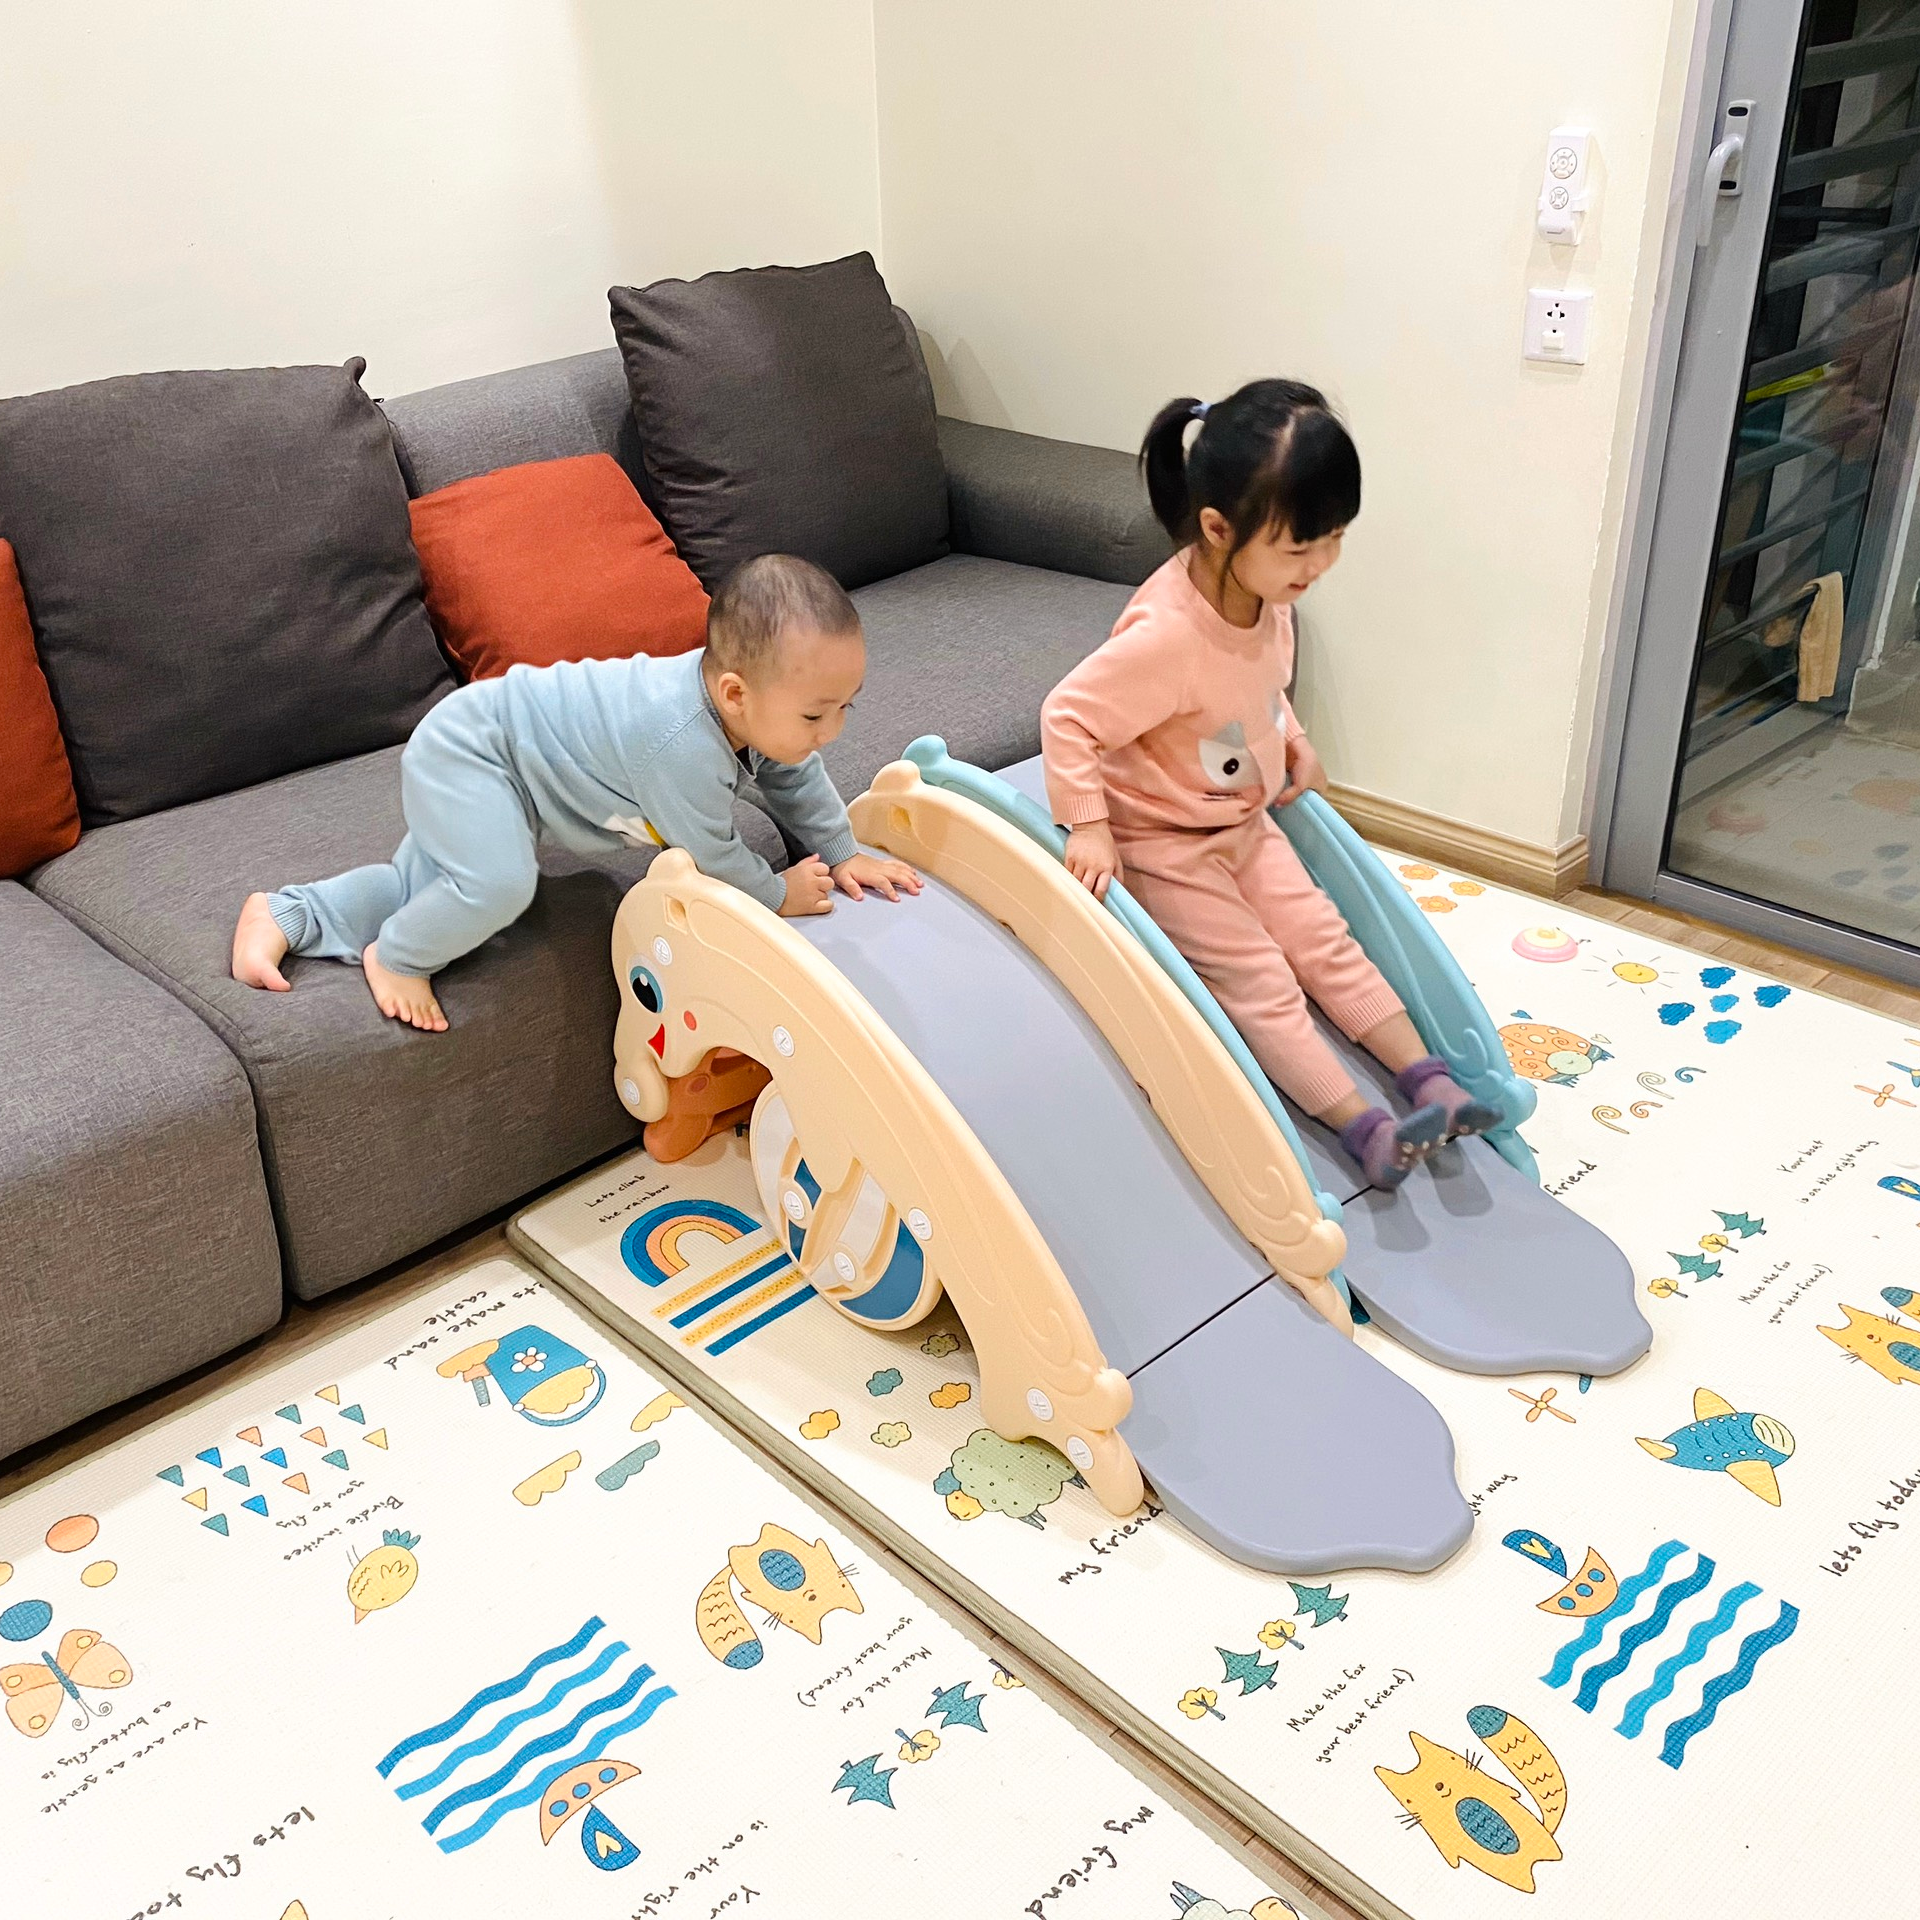 Cầu trượt bập bênh  hình cá heo Holla 2020 thiết kế 3in1Ếch bập bênh- Cầu trượt cá heo- Cột bóng rổ cho bé thỏa sức vận động chỉ trong 1 sản phẩm